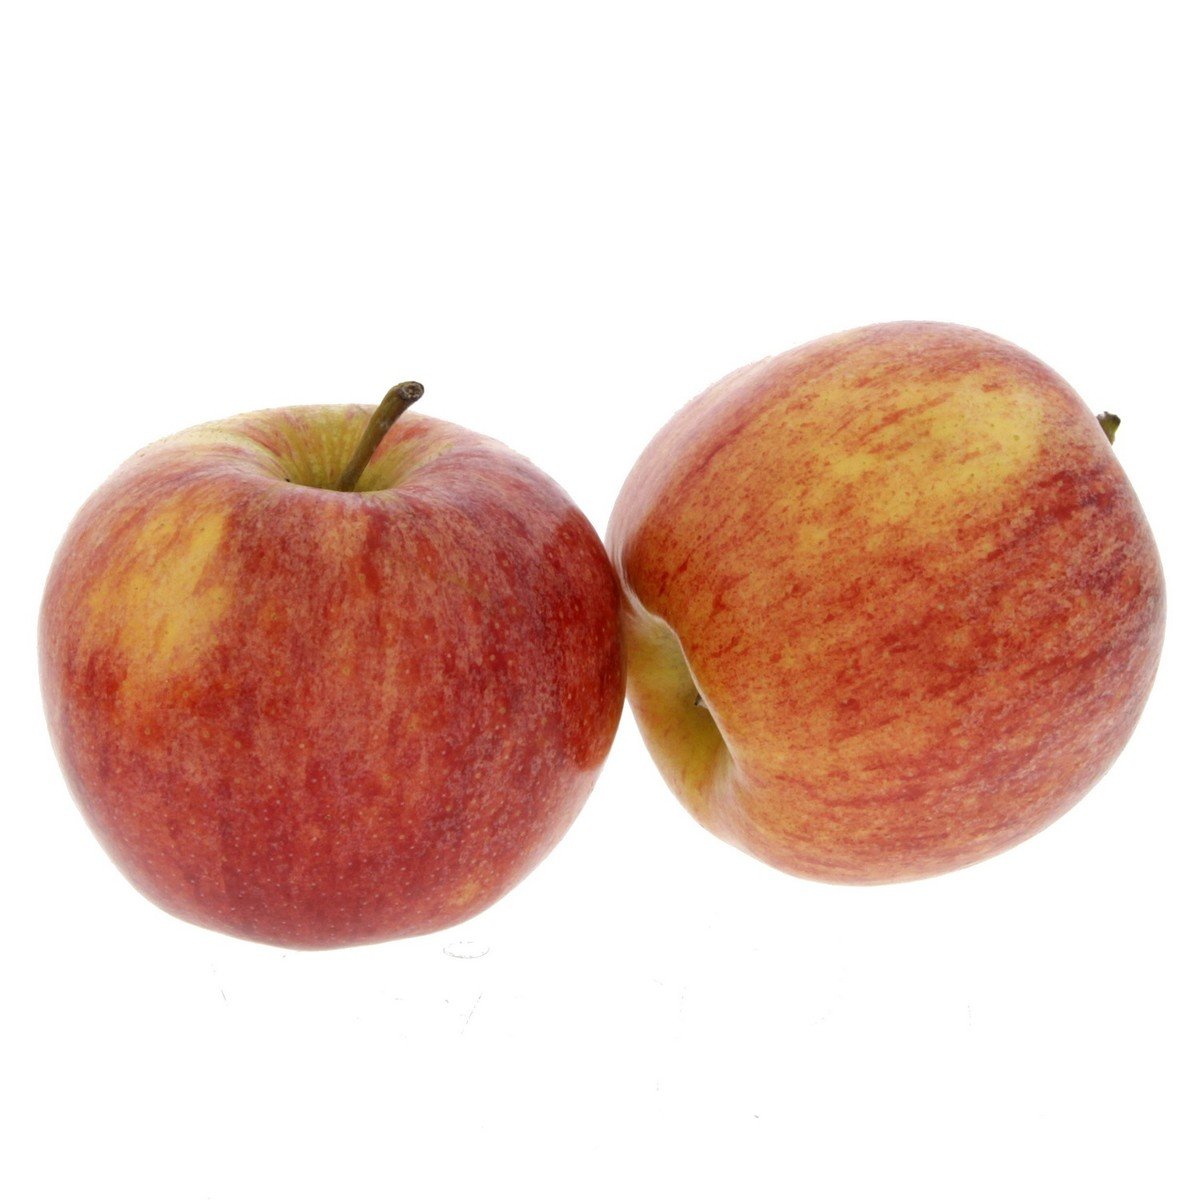 تفاح رويال جالا شيلي ١ كجم تقريبا